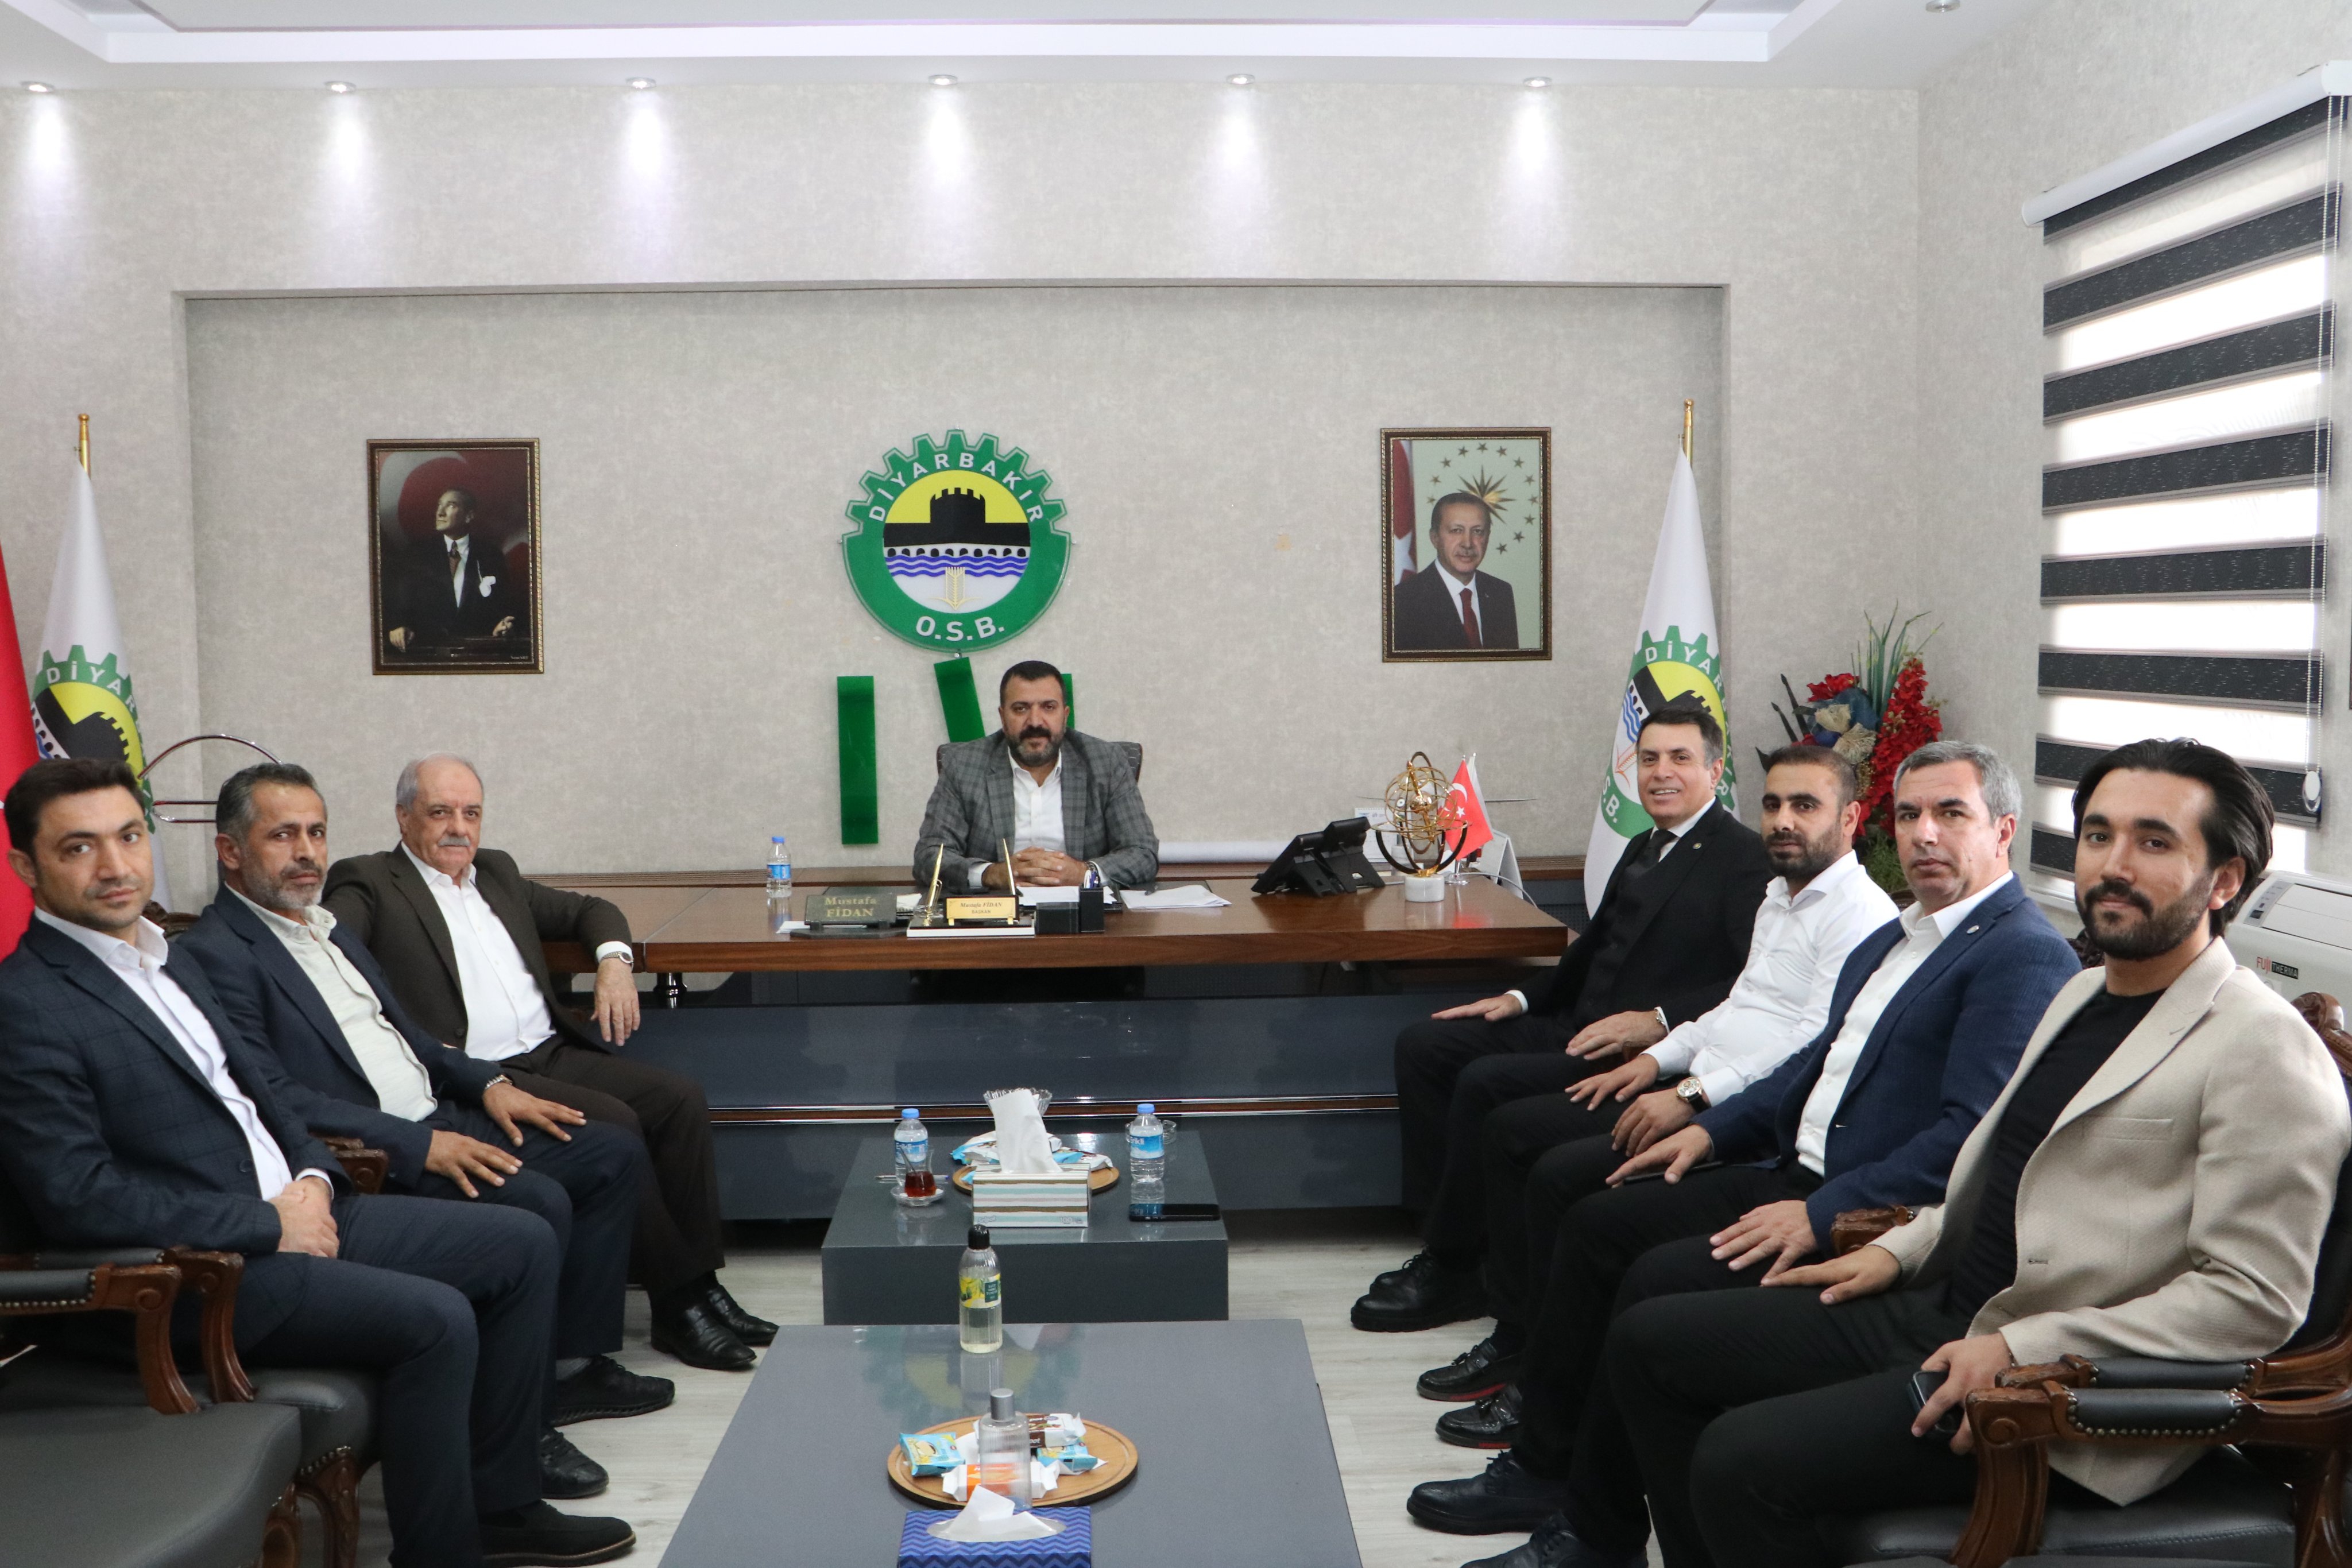 İYİ Parti Diyarbakır İl Başkanı Vejdi Ensarioğlu ve yönetimi, Diyarbakır Organize Sanayi Bölgesi Yönetim Kurulu nu ziyaret etti